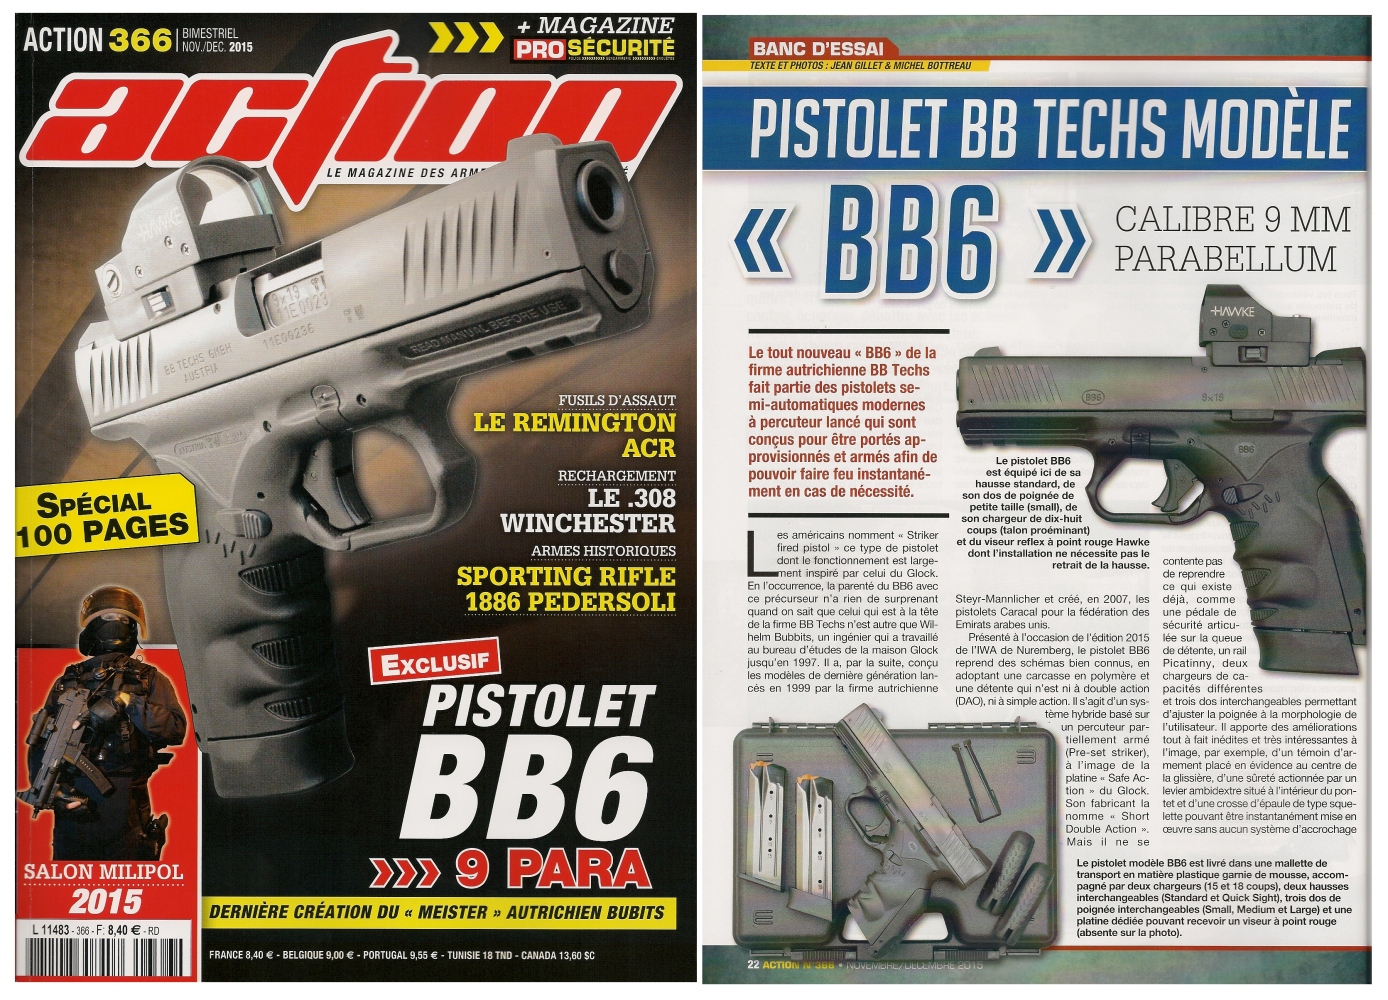 Le banc d'essai du pistolet BB Techs modèle BB6 a été publié sur 6 pages dans le magazine Action n°366 (novembre-décembre 2015). 